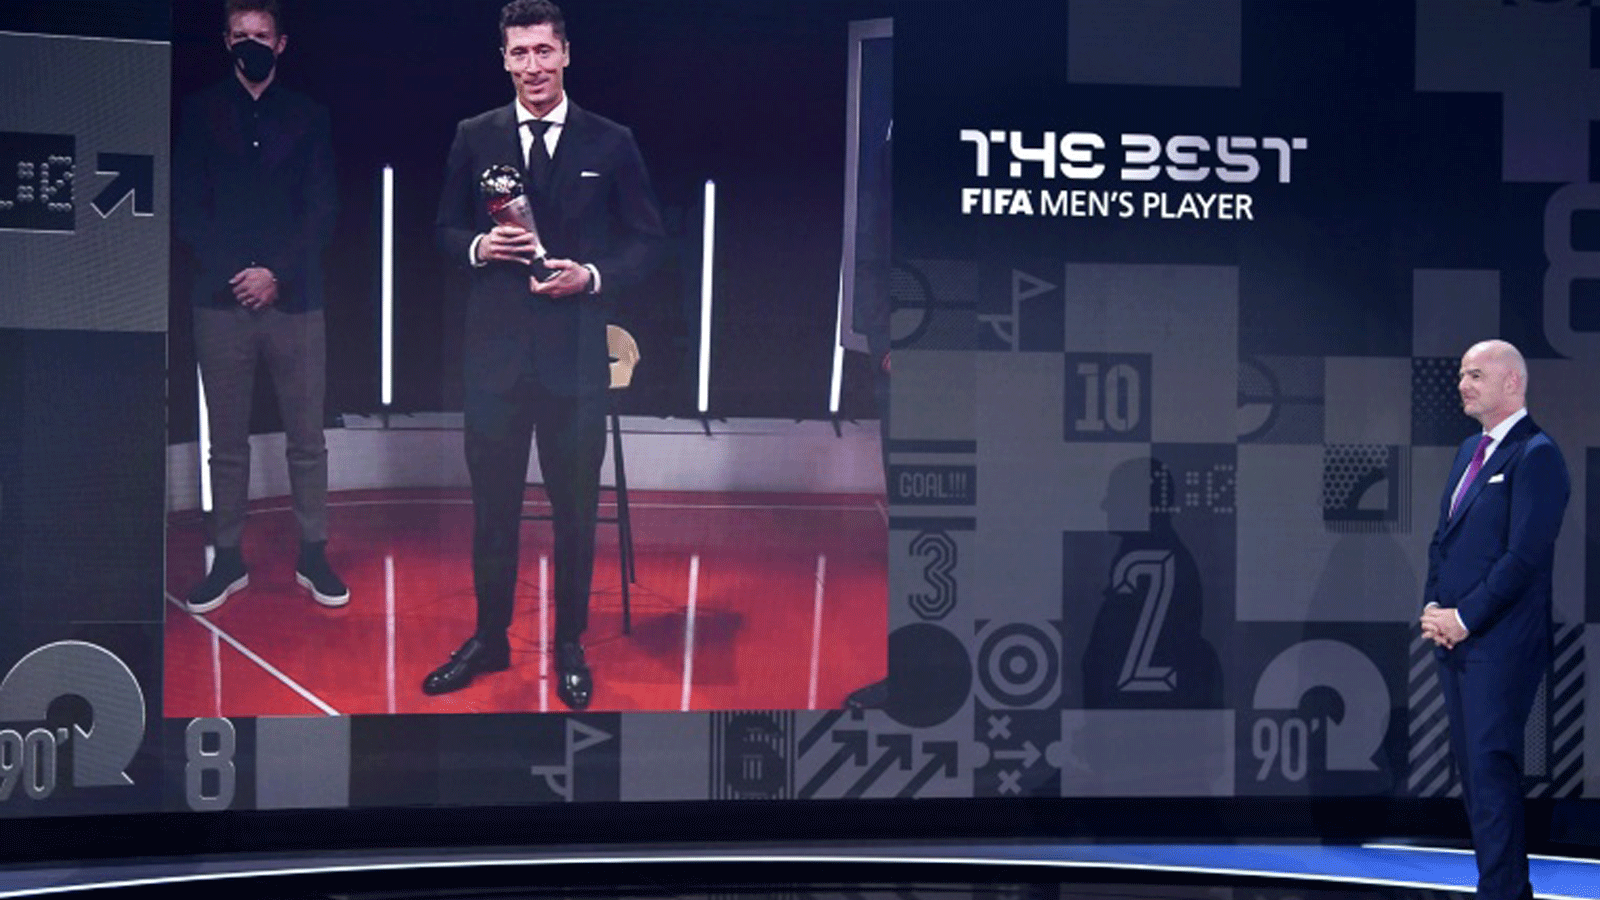 مهاجم بايرن ميونيخ البولندي روبرت ليفاندوفسكي الذي يظهر على الشاشة تُوج أفضل لاعب في جوائز الاتحاد الدولي لكرة القدم 